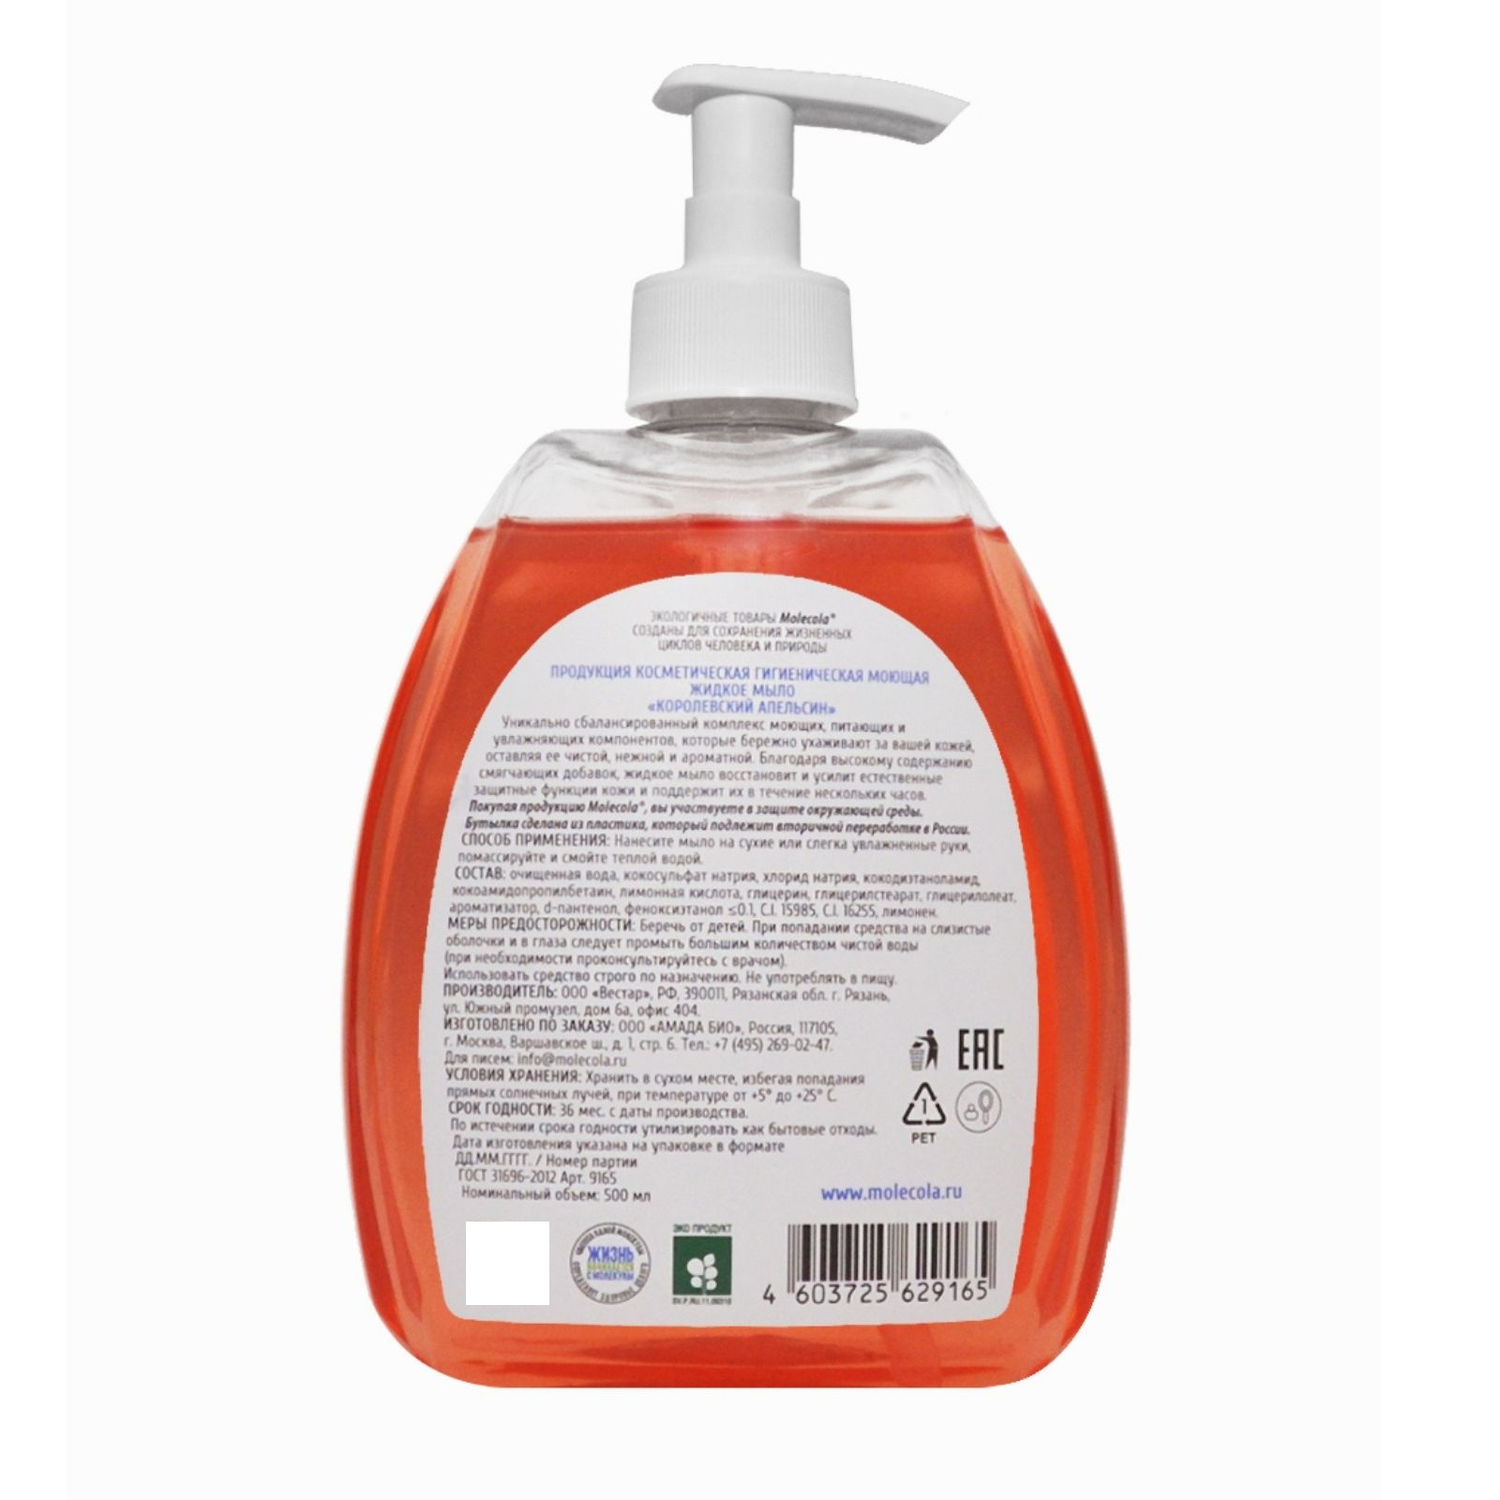 Жидкое мыло Molecola Королевский Апельсин экологичное 500 мл - фото 2